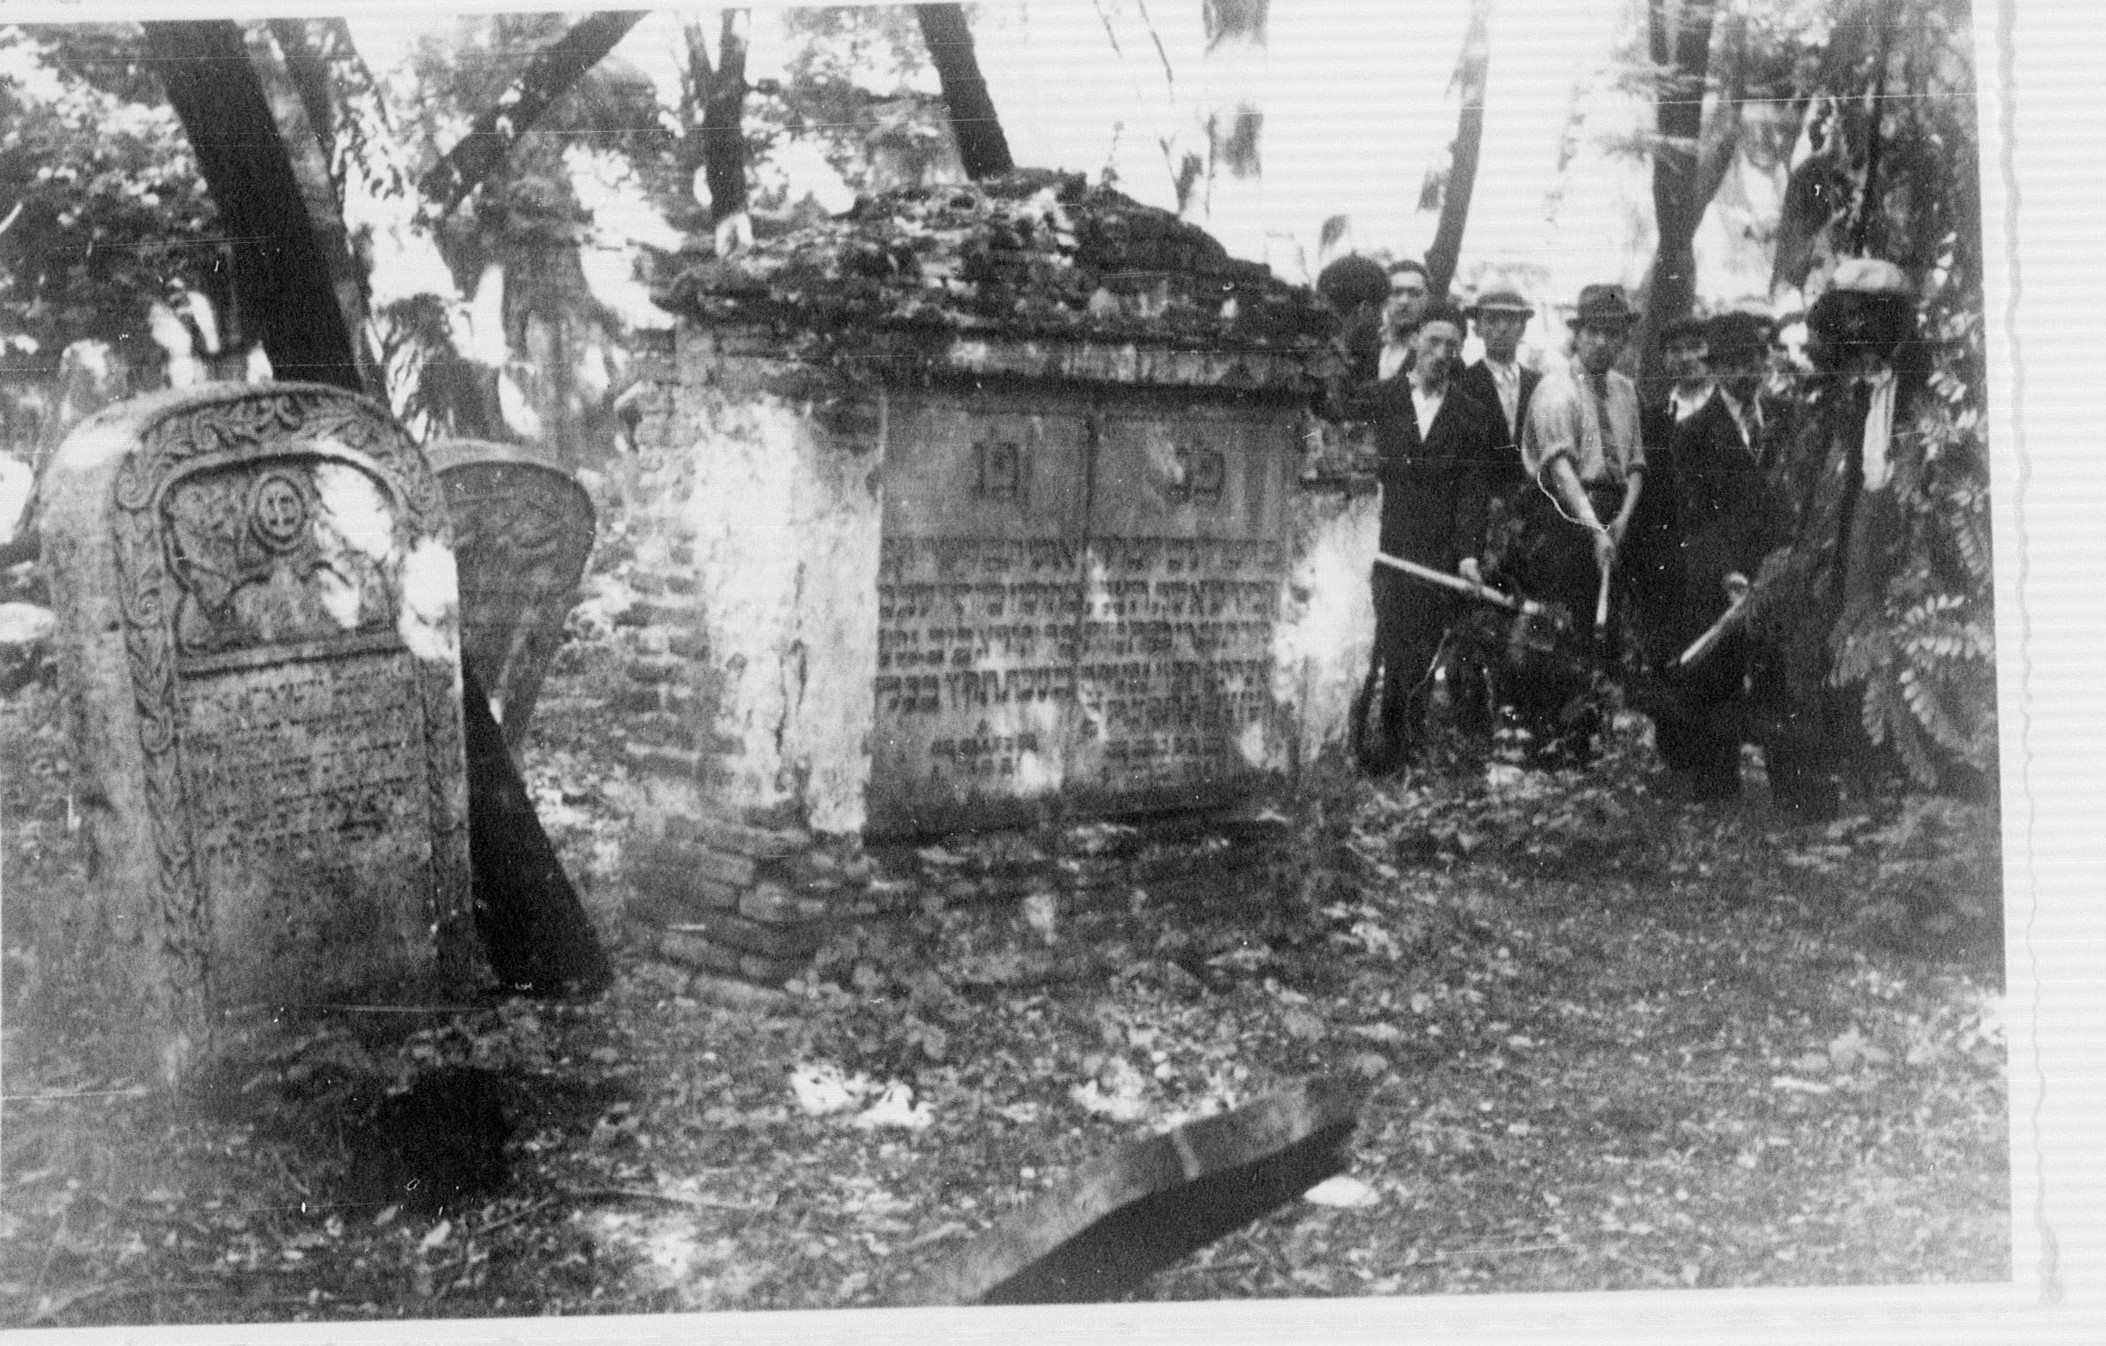 Evreii la munca obligatorie la dezafectarea cimitirului Sevastopol